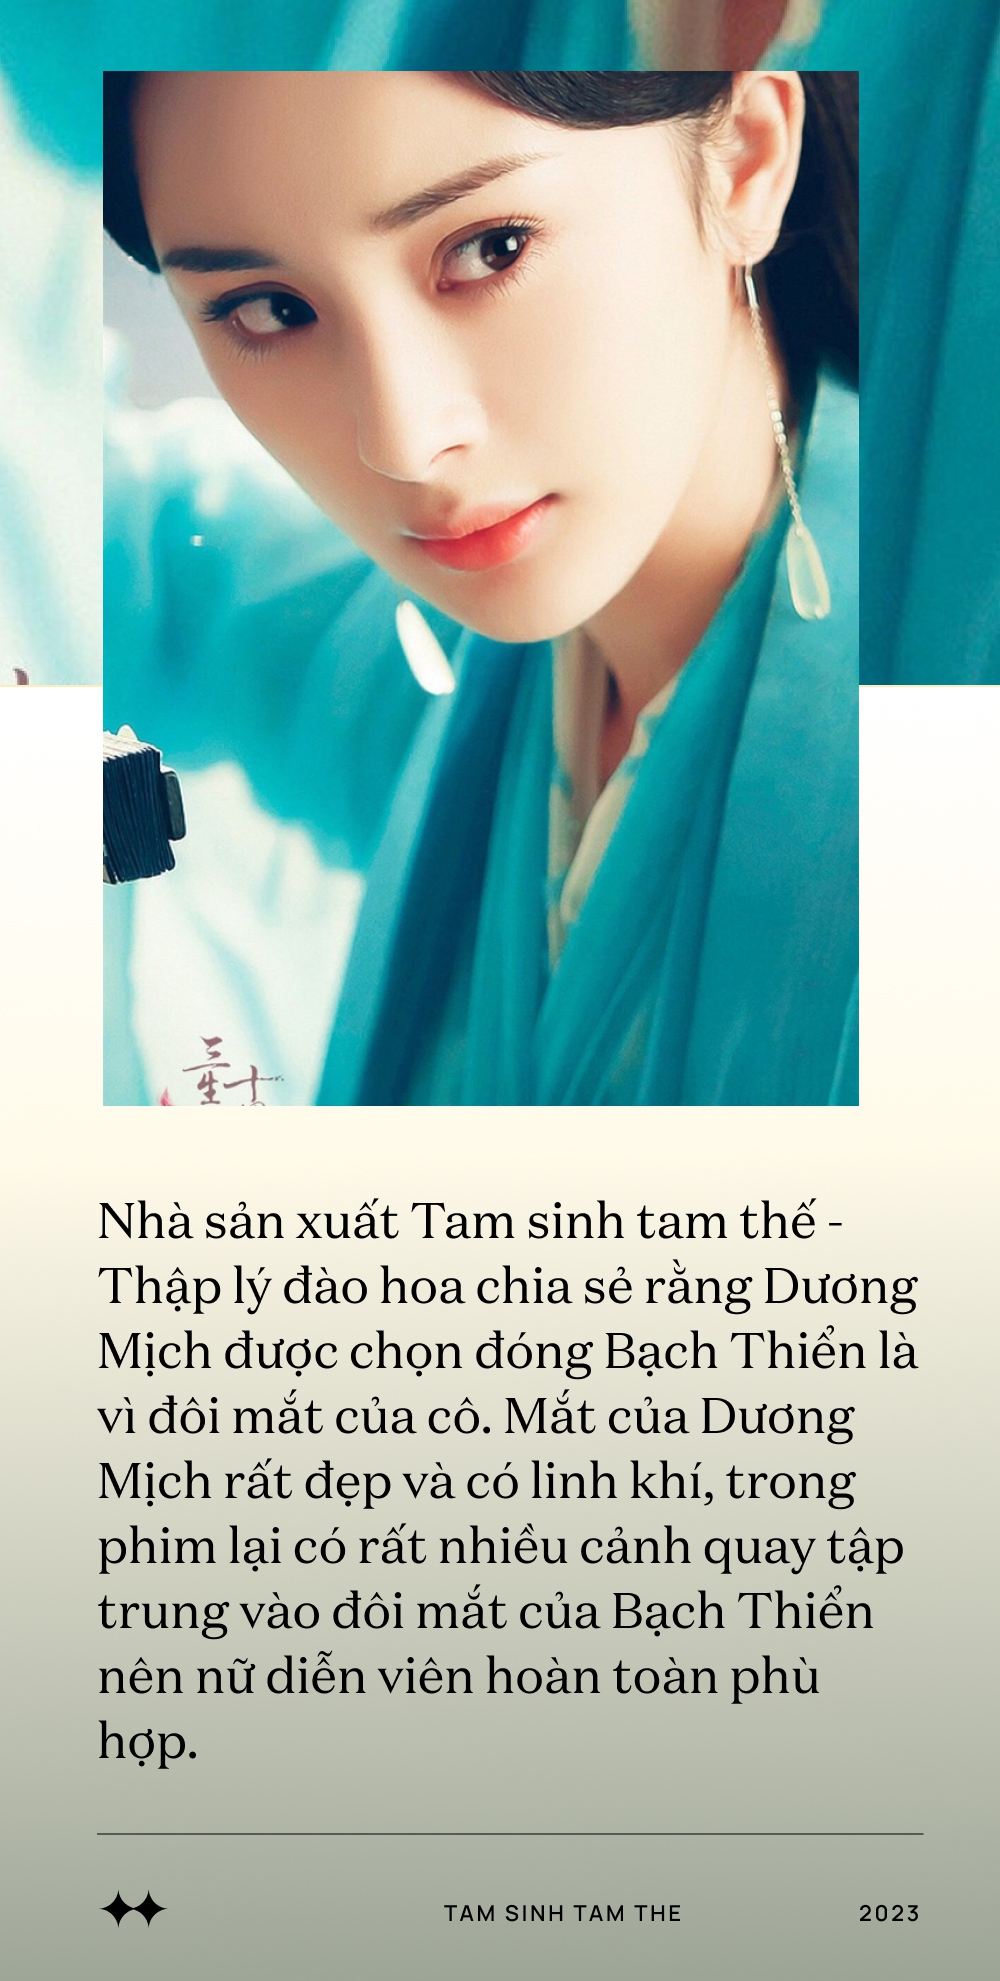 Thâm cung bí sử Thập lý đào hoa - bộ phim khiến Dương Mịch trở mặt với Đường Yên, lộ phốt ở trường quay - Ảnh 2.